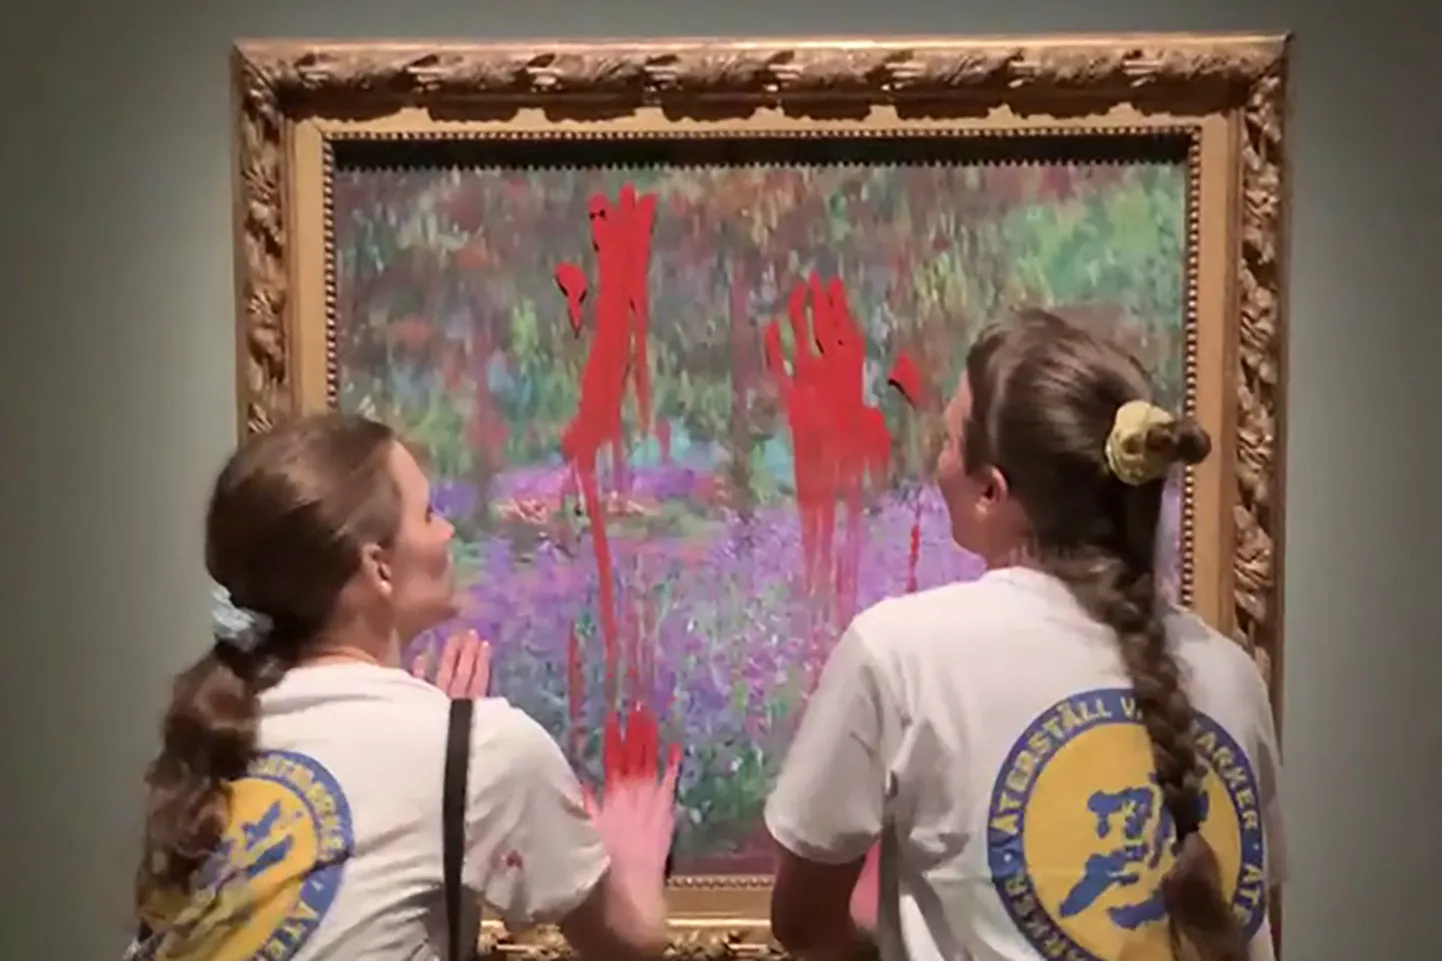 Rootsi keskkonnaaktivistid üritasid Claude Monet’ maali «Giverny kunstniku aed» värviga määrides tõmmata tähelepanu kliimakriisi ja tervishoiuprobleemide seostele